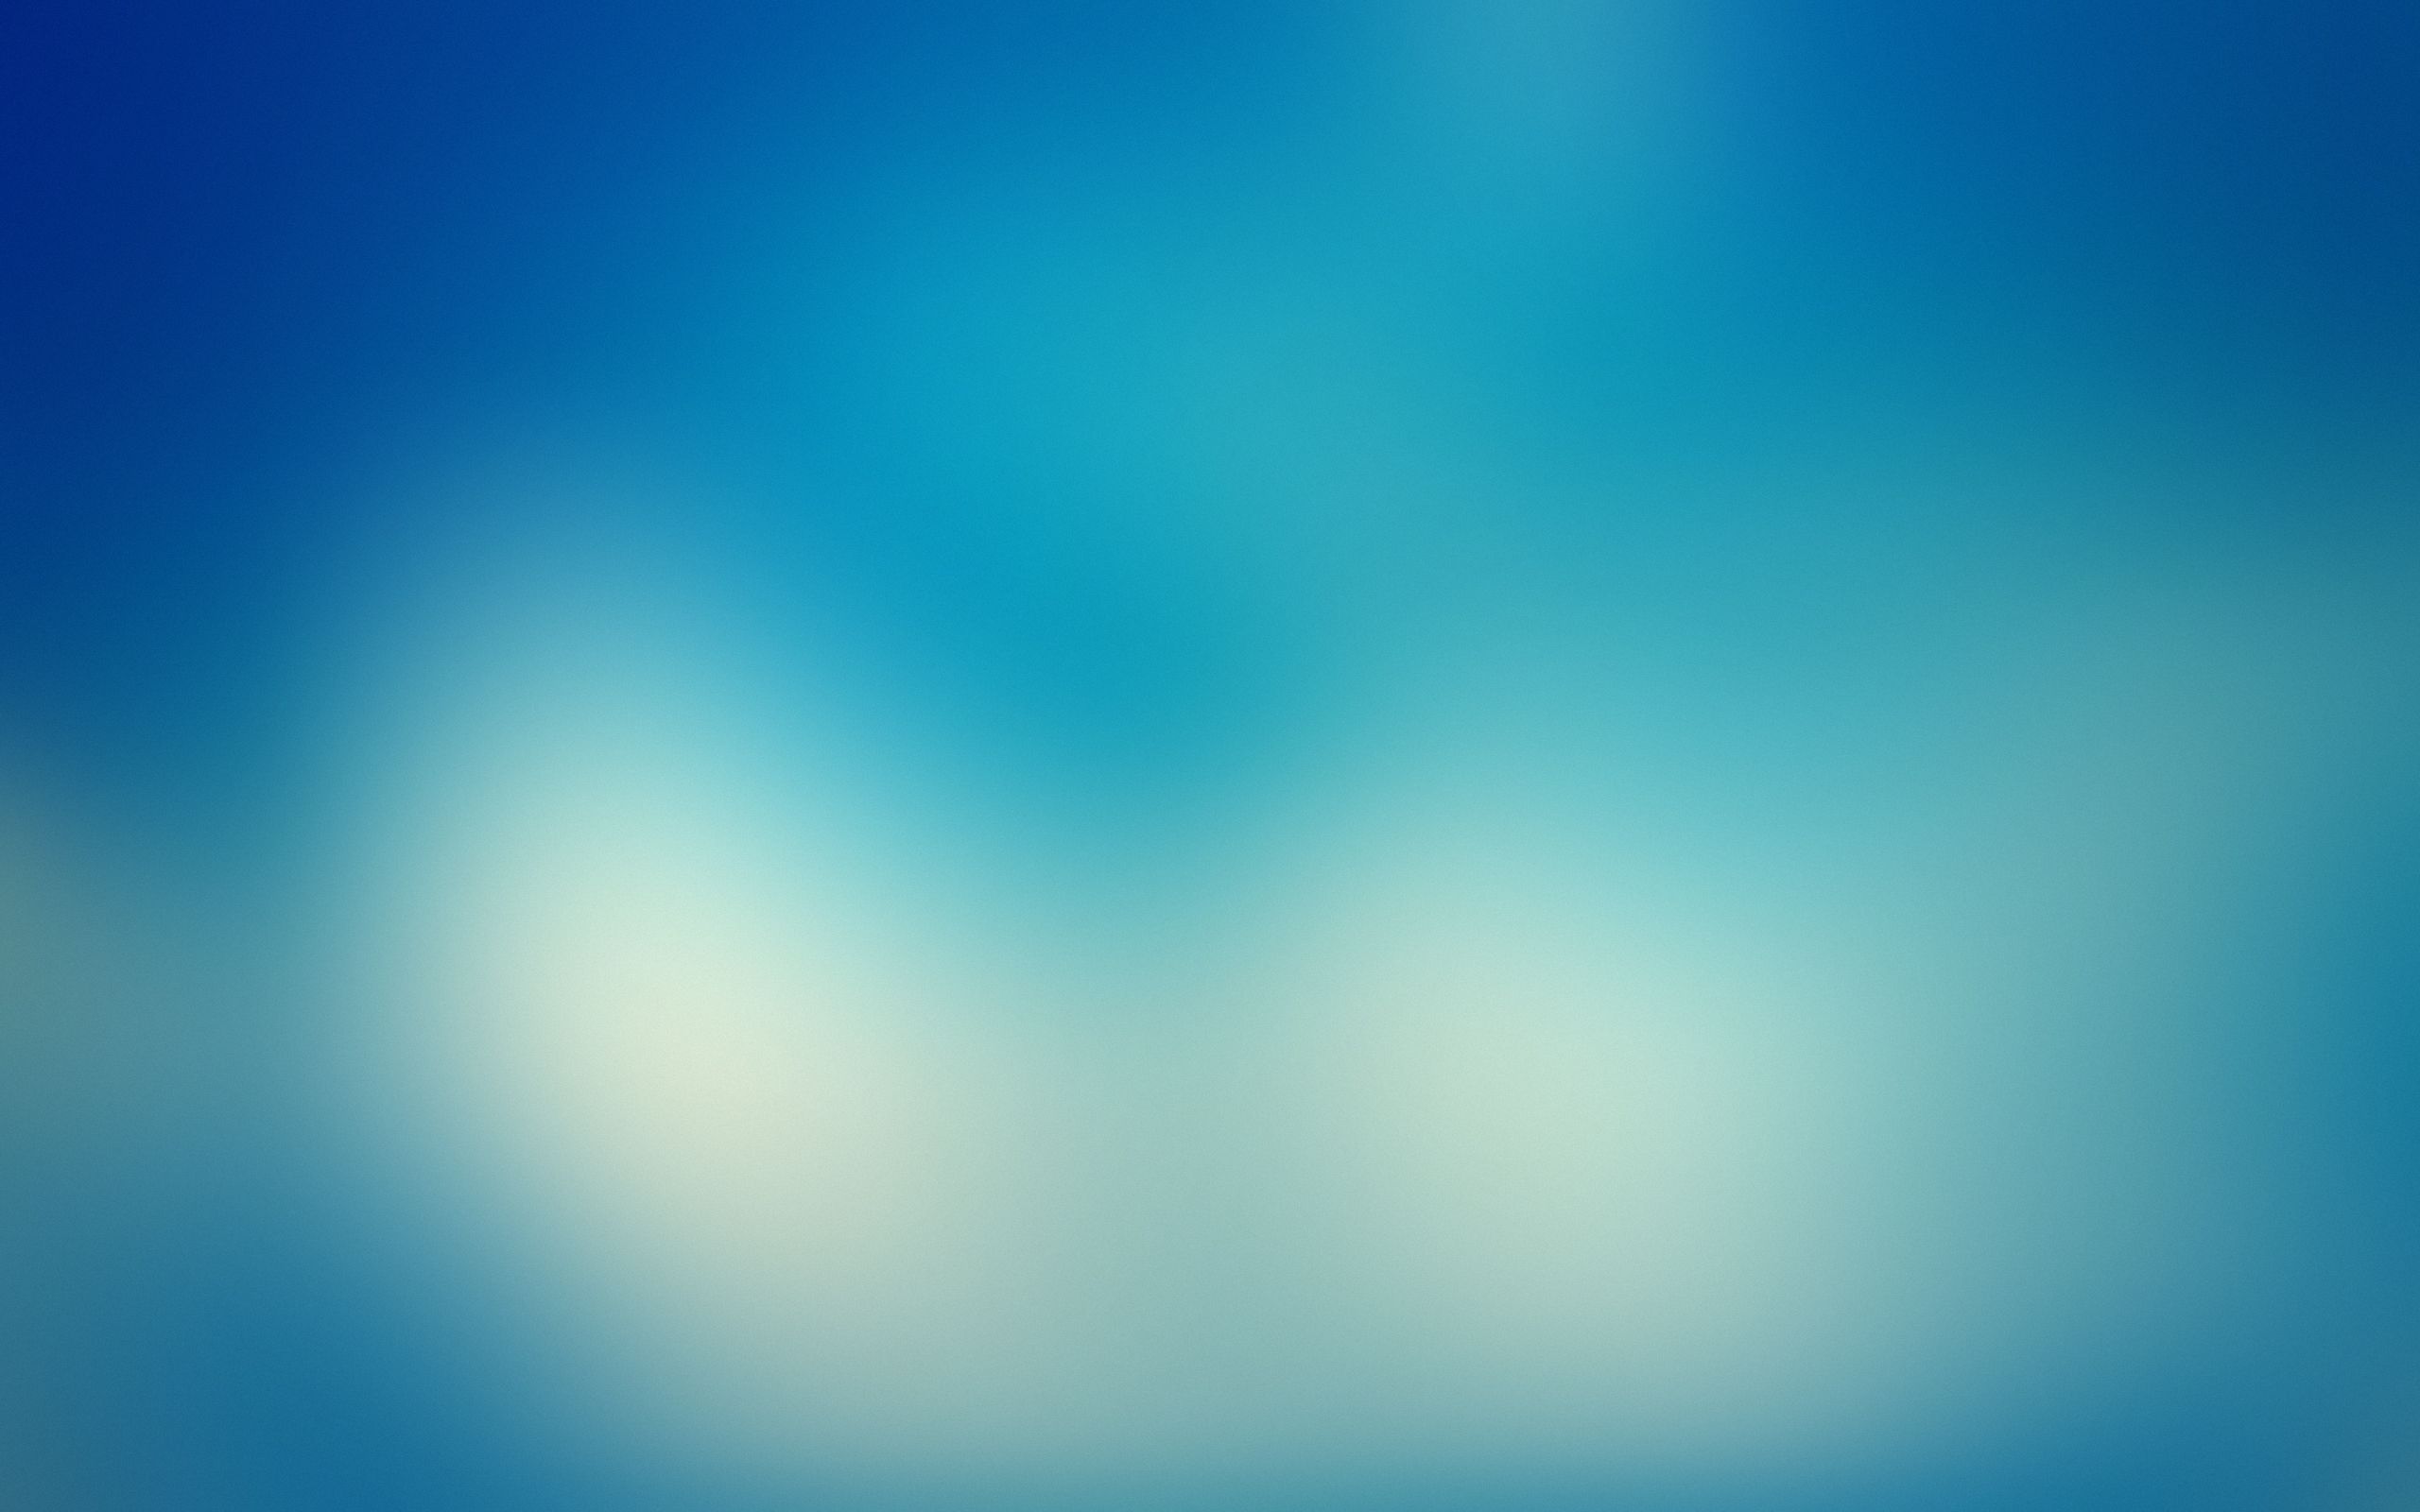 Gradient Blur Wallpapers